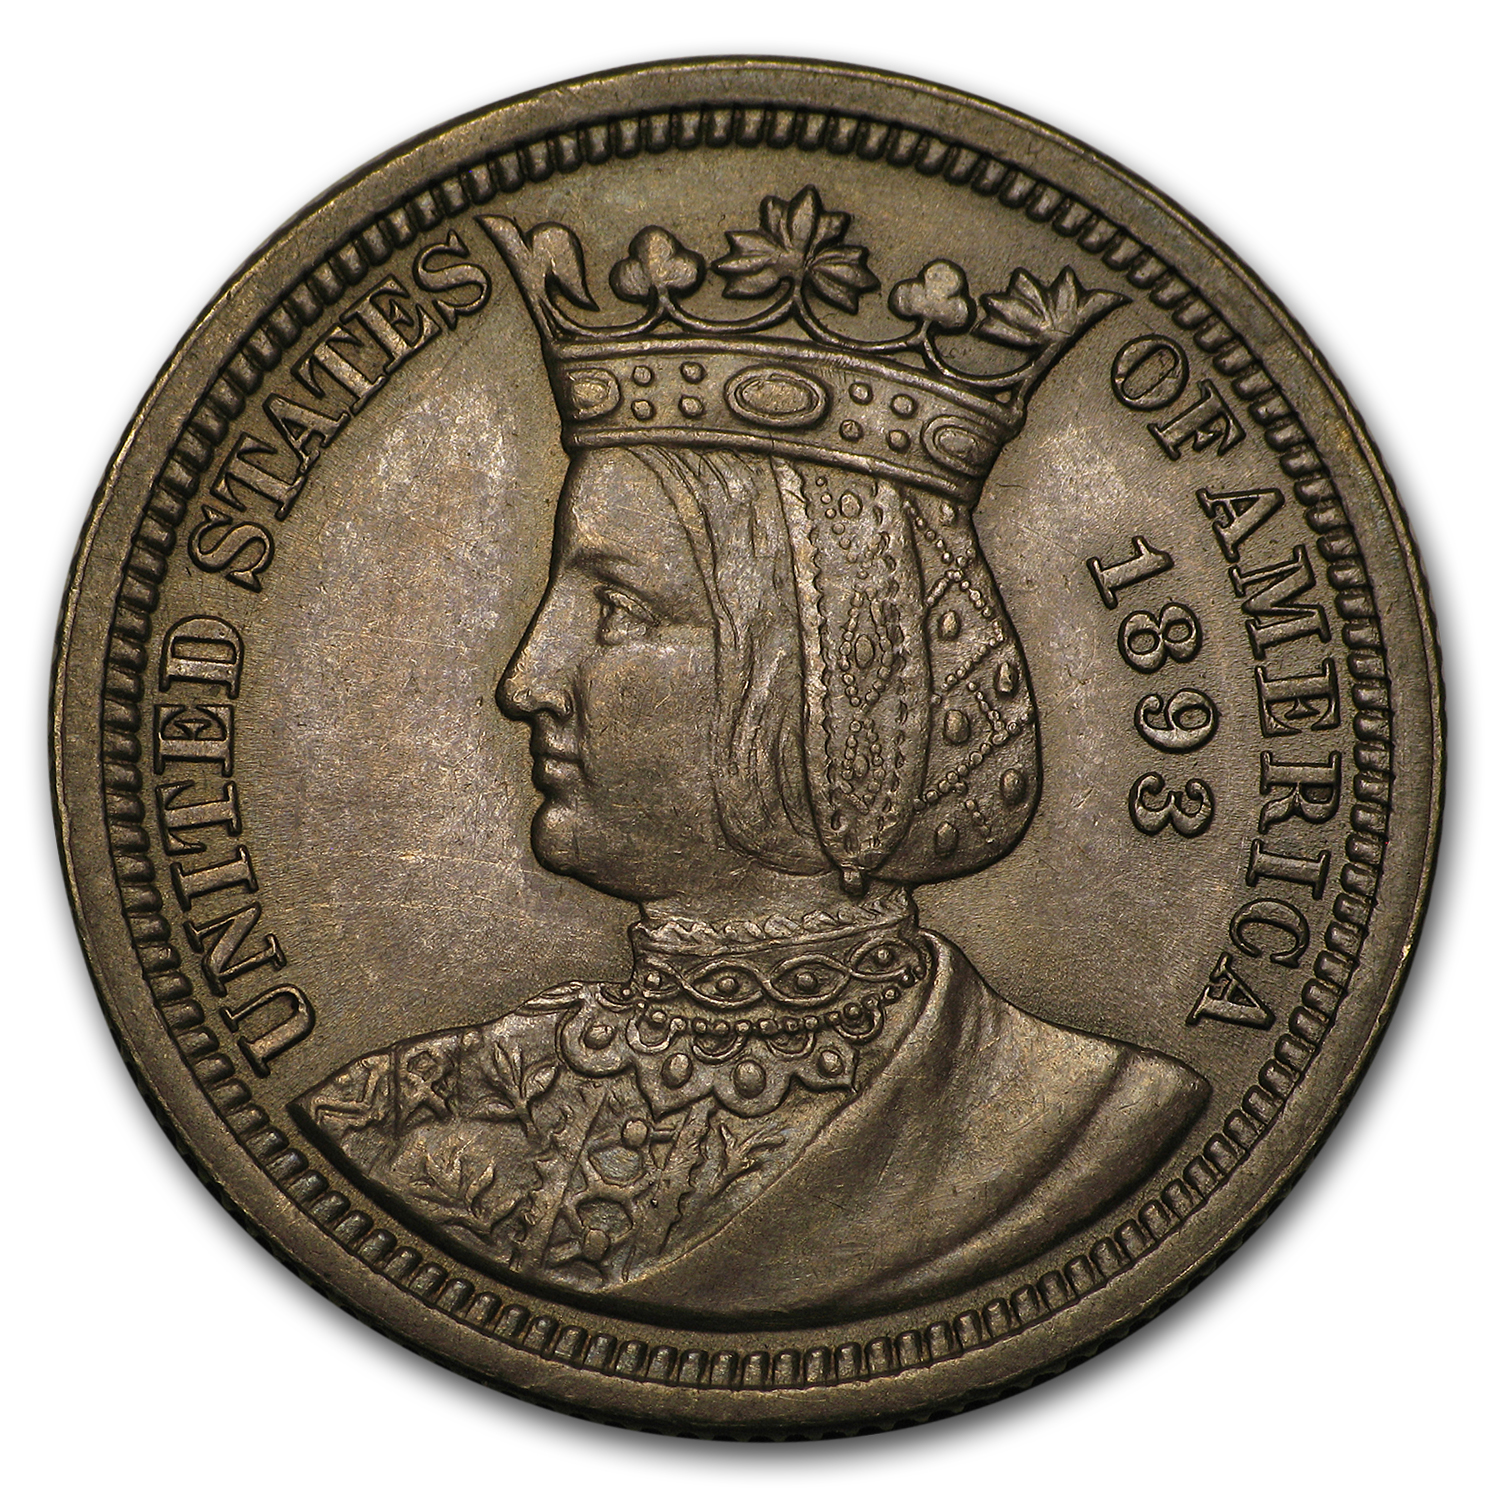 Buy 1893 Isabella Commemorative Quarter AU (Toned)